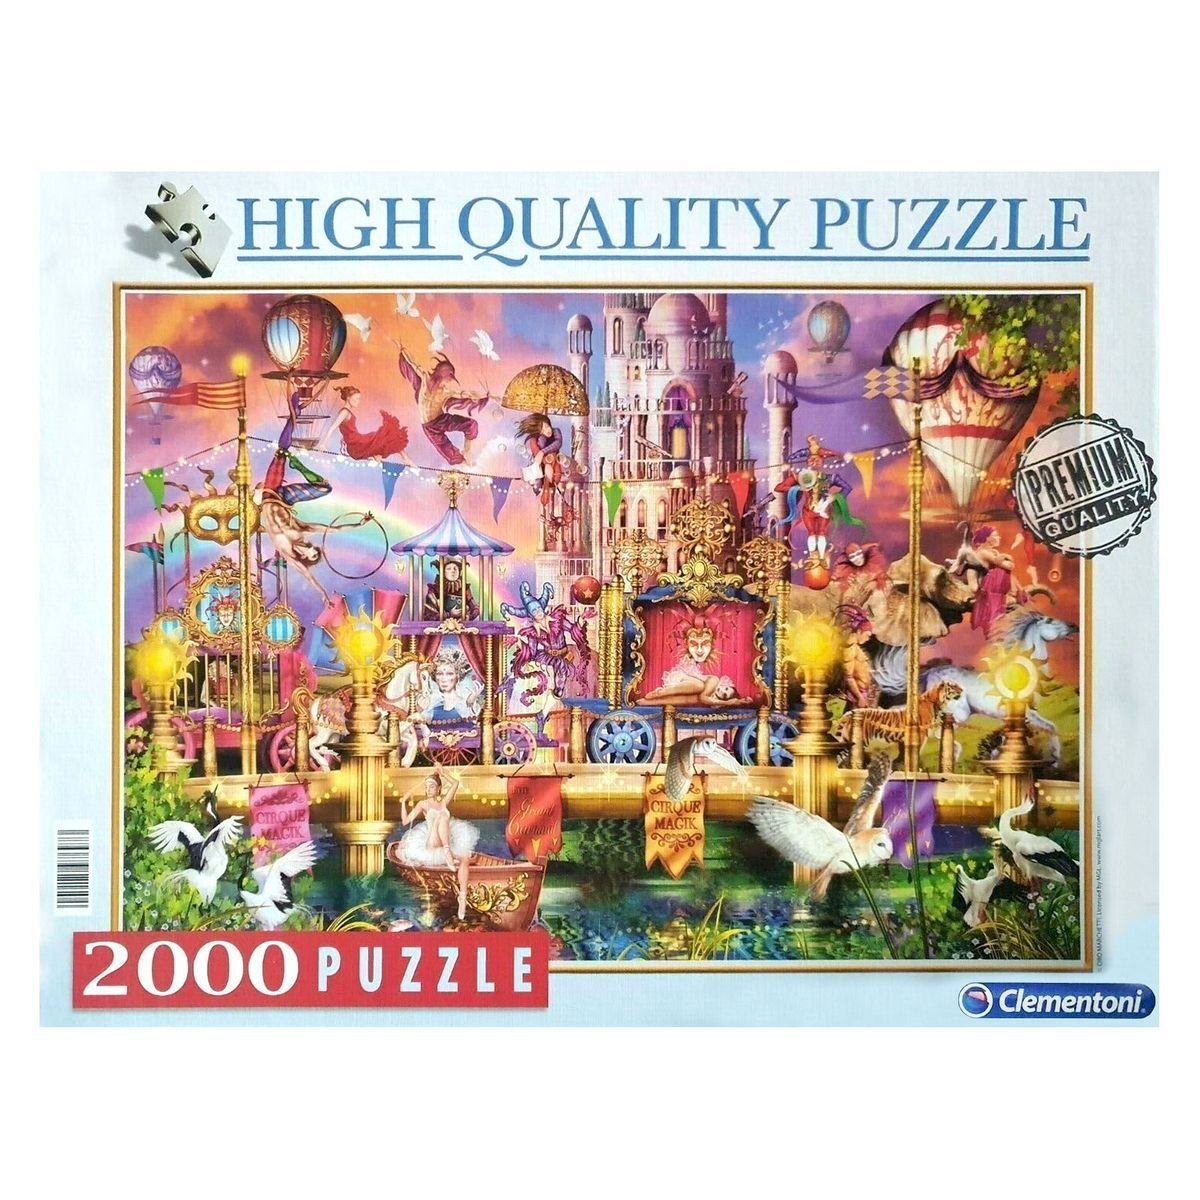 Clementoni® Puzzle Clementoni 97697 - High Quality Puzzle - Zirkus "The  Circus", 2000 Teile, 2000 Puzzleteile